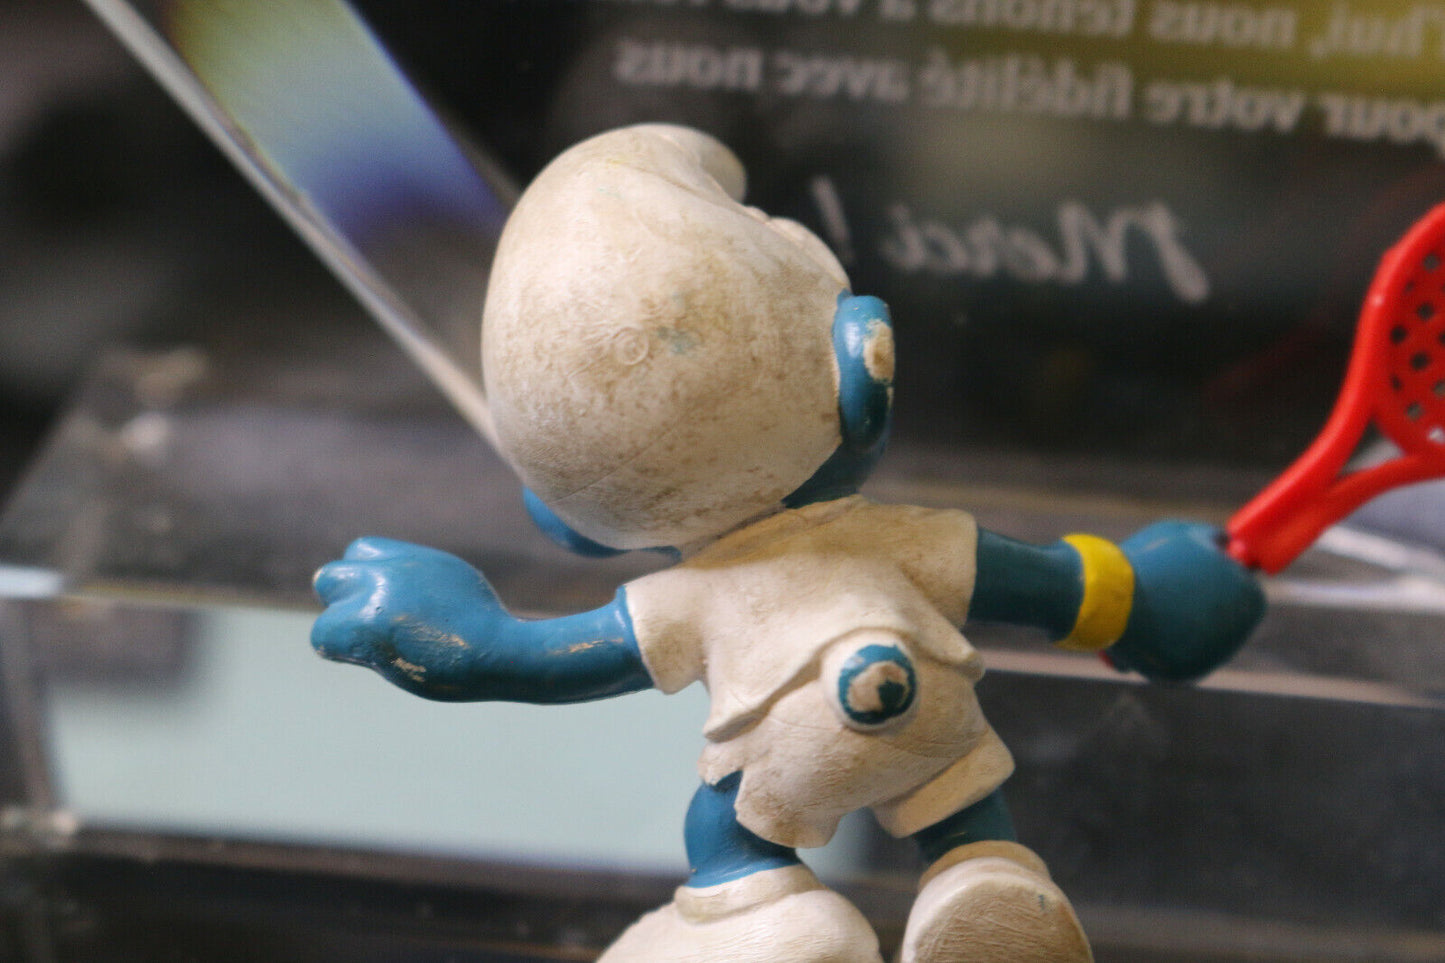 ✨ Vintage Smurf Tennis Player Figure Peyo 1978 Rare Schleich Pvc Toy Figurine ✨